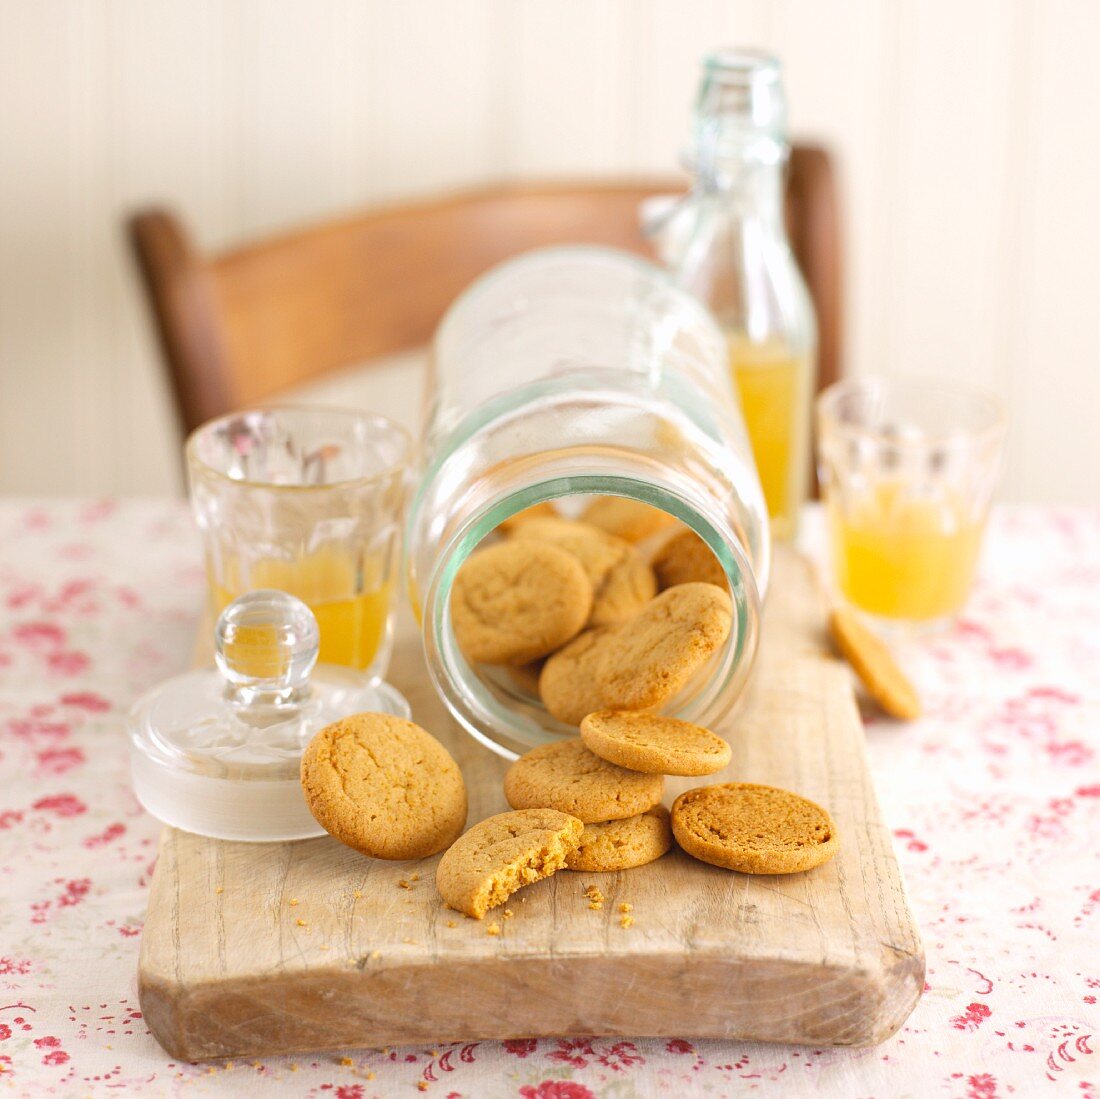 Ginger biscuits in fallen over jar